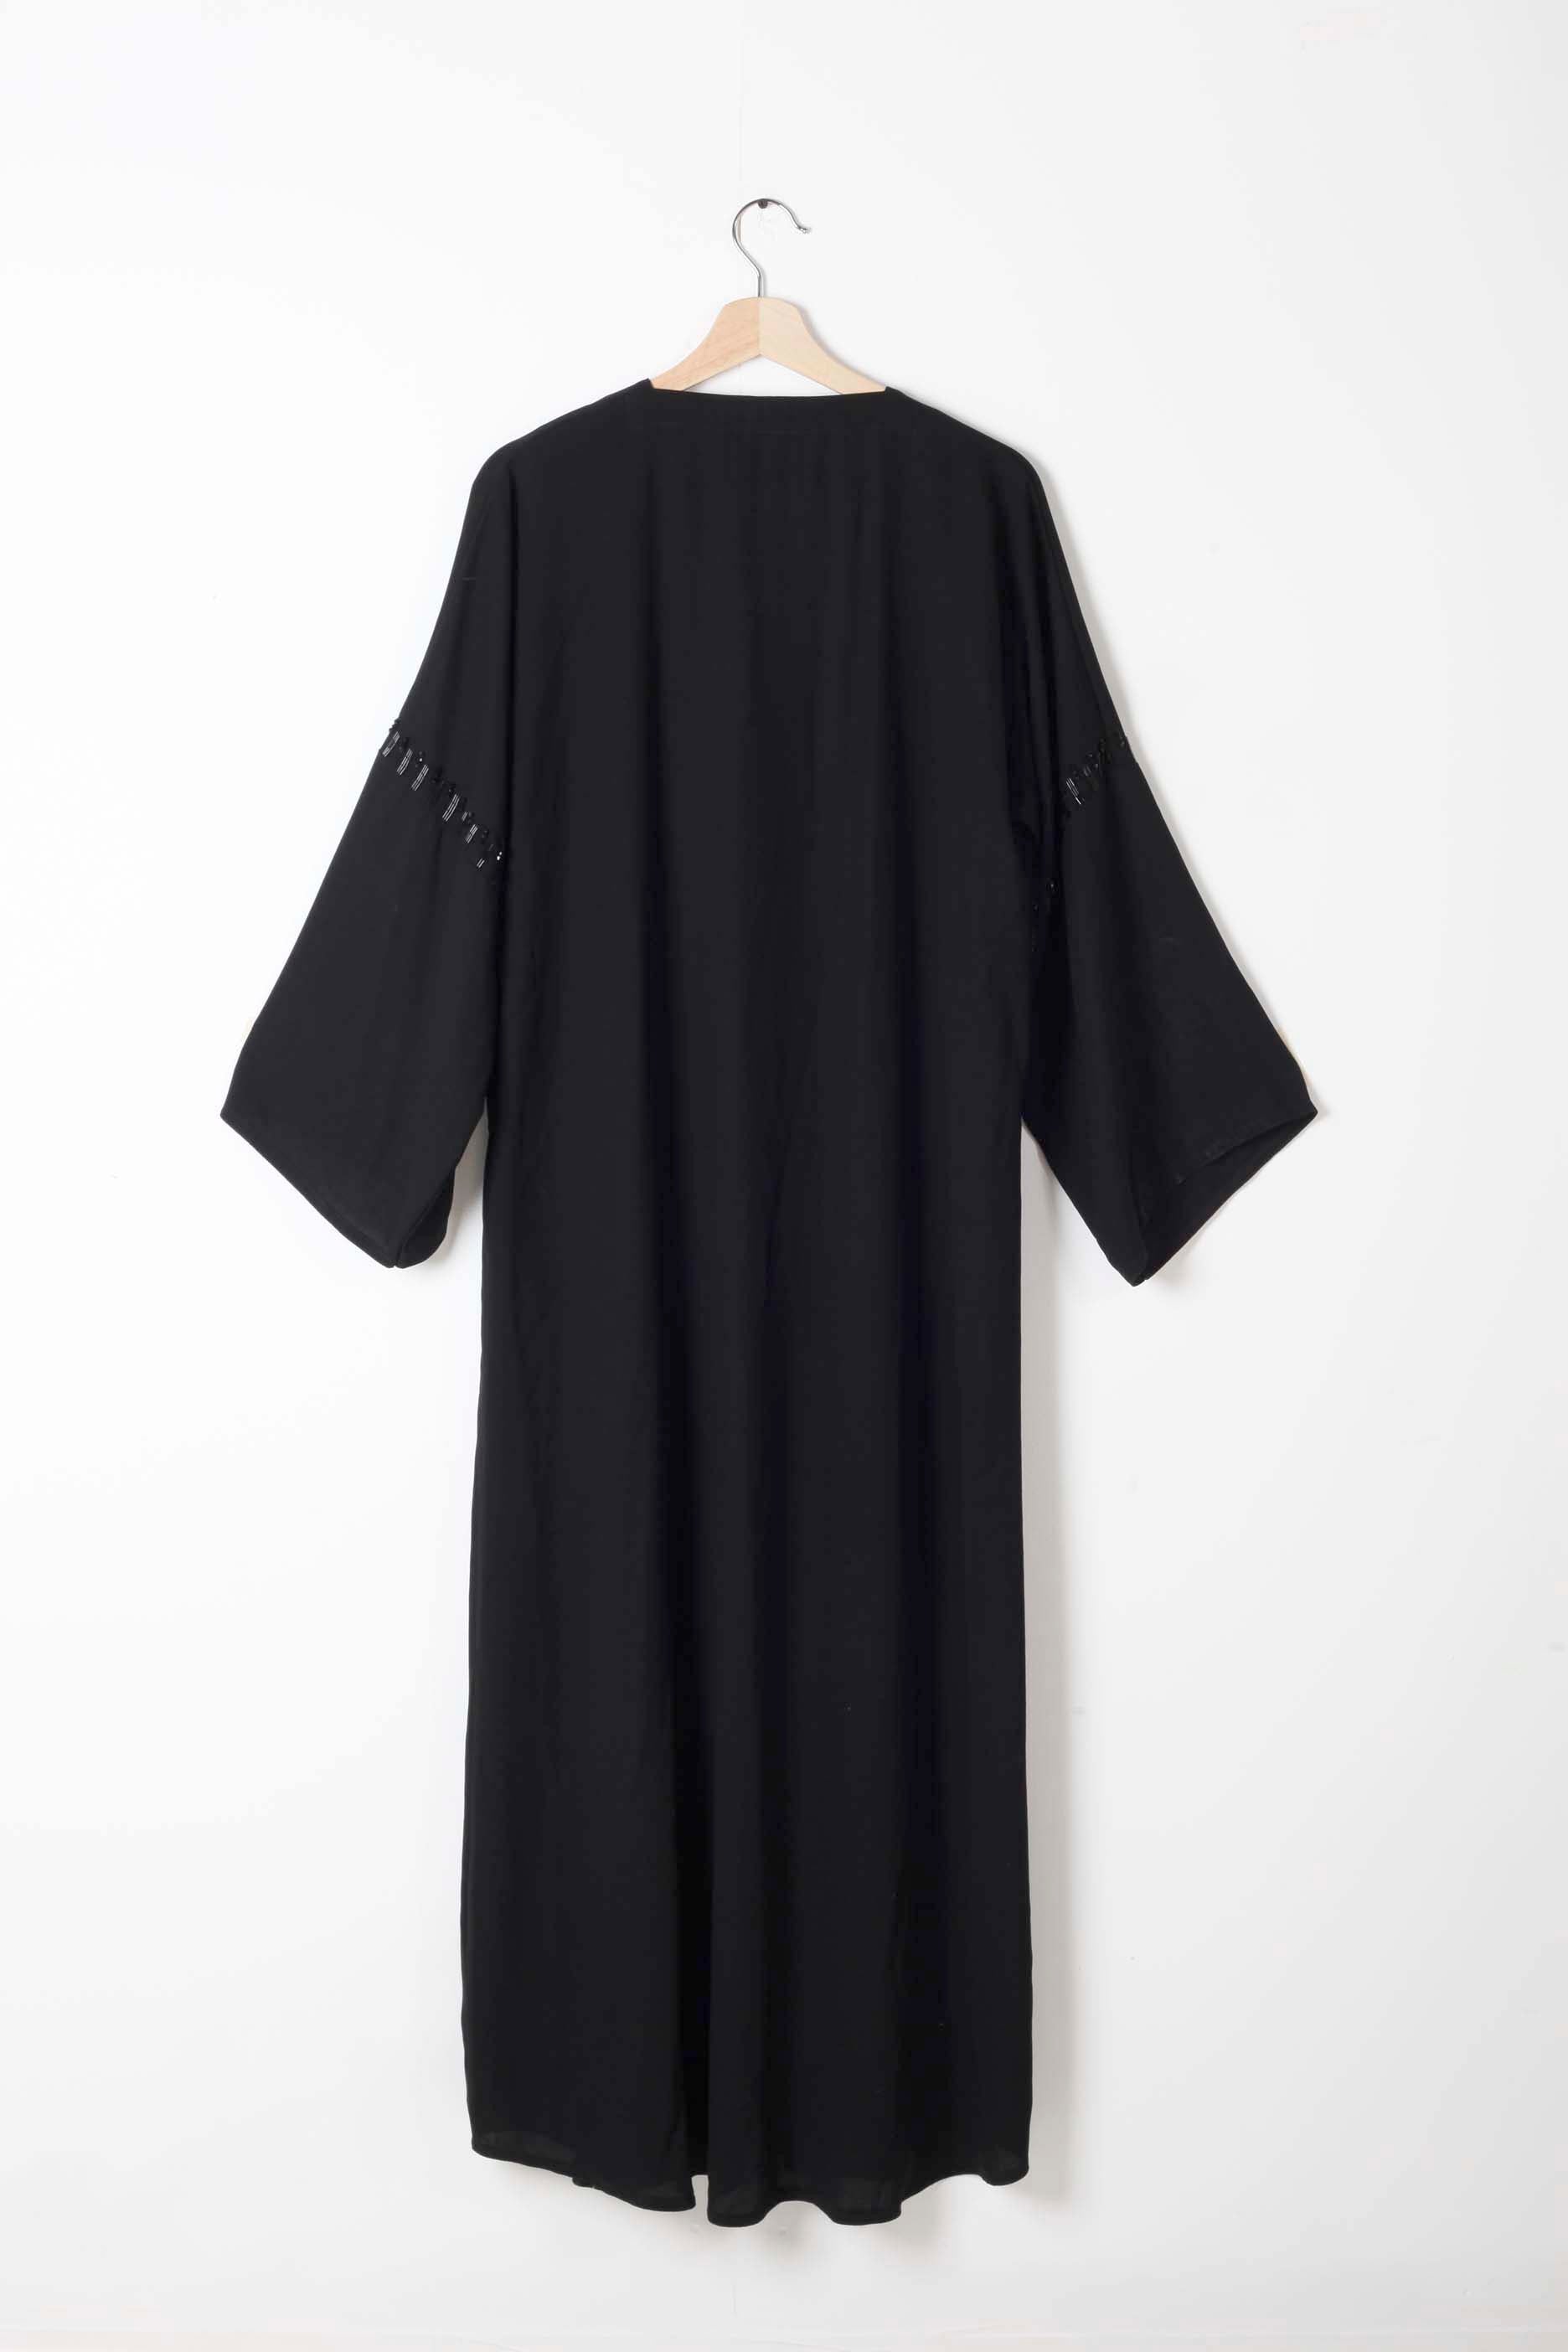 Black Abaya with Black Beading